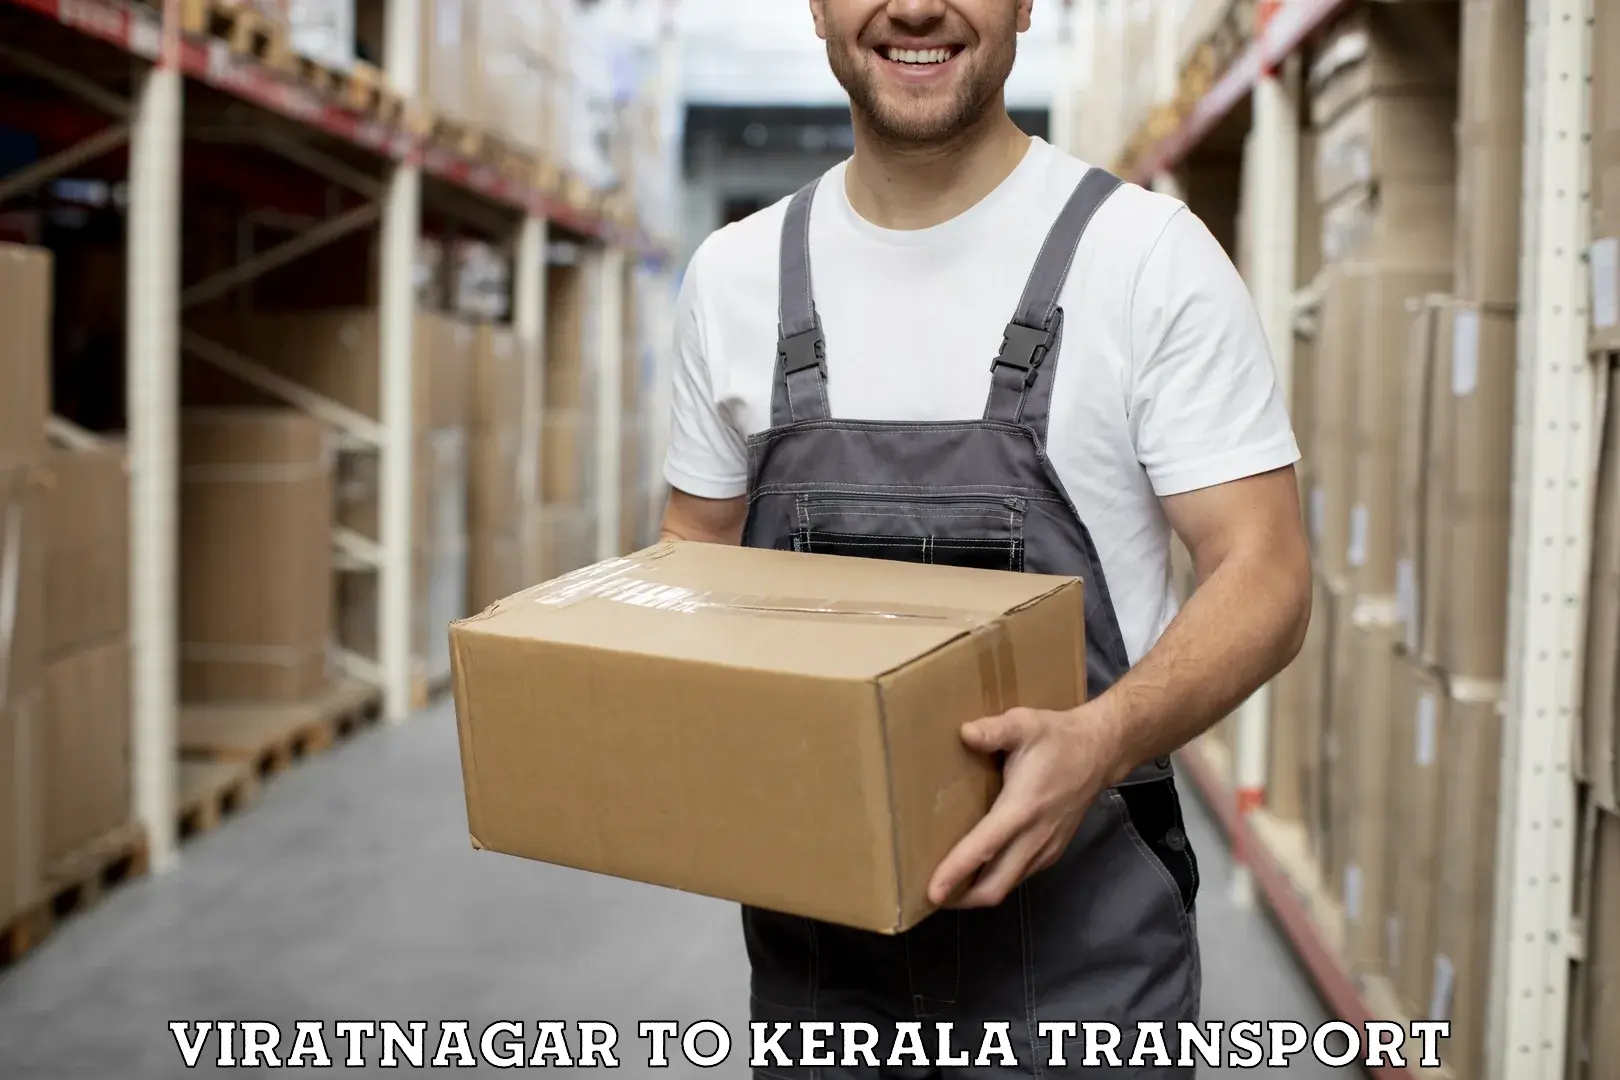 Online transport service Viratnagar to Kottayam